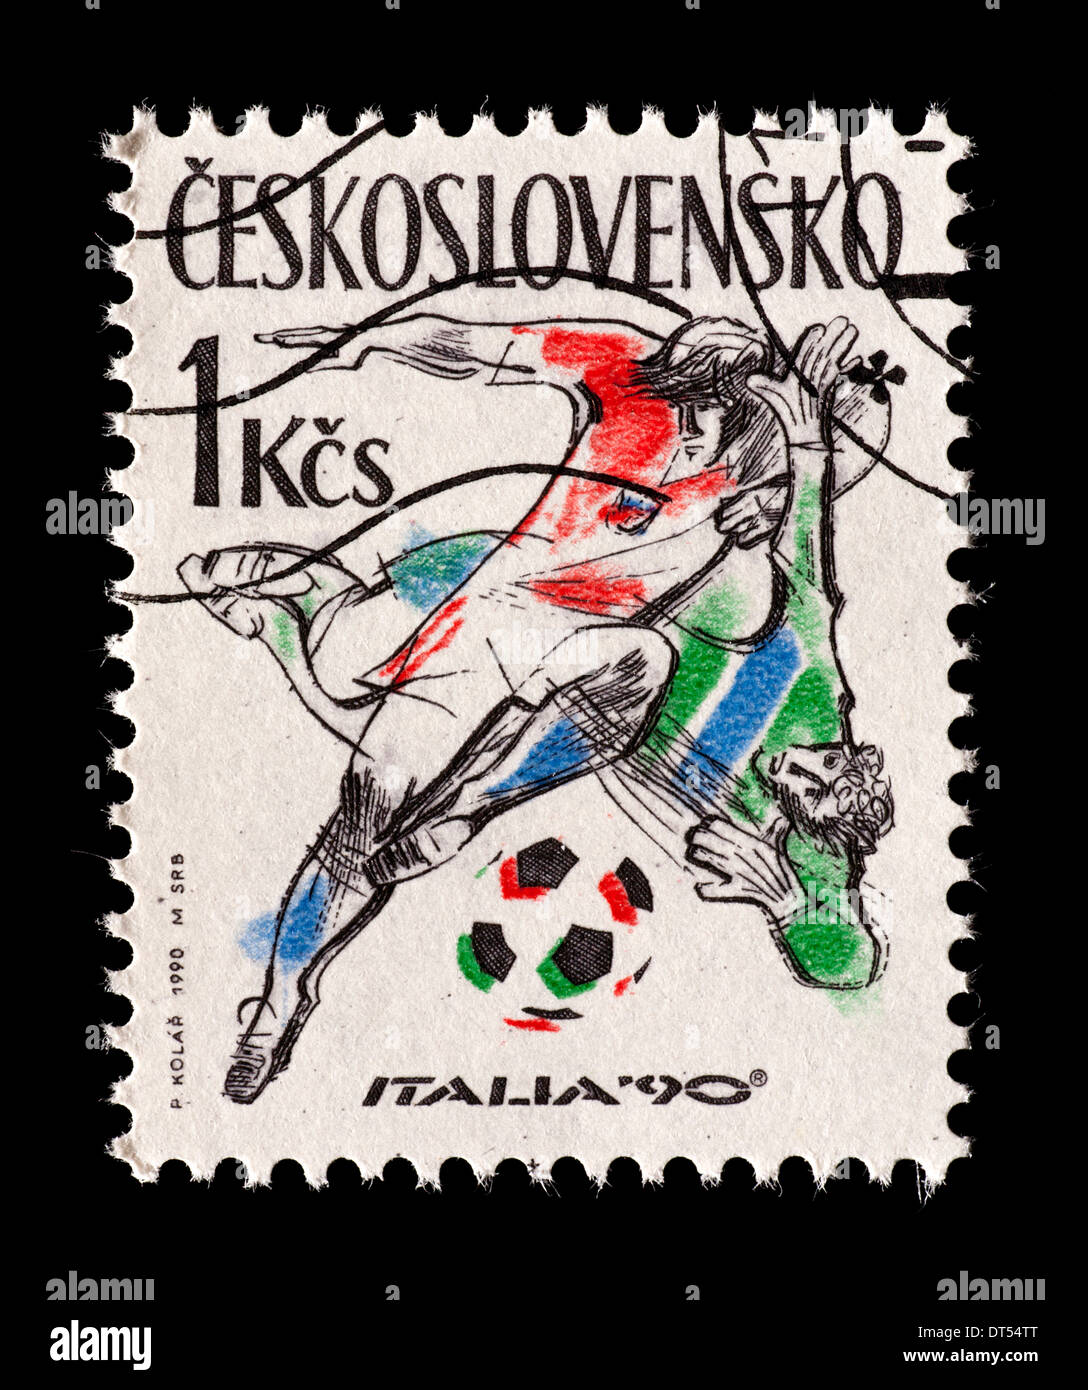 Timbre-poste de la Tchécoslovaquie représentant des joueurs de football, stylisé émis pour la Coupe du Monde 1990 en Italie, 1990. Banque D'Images